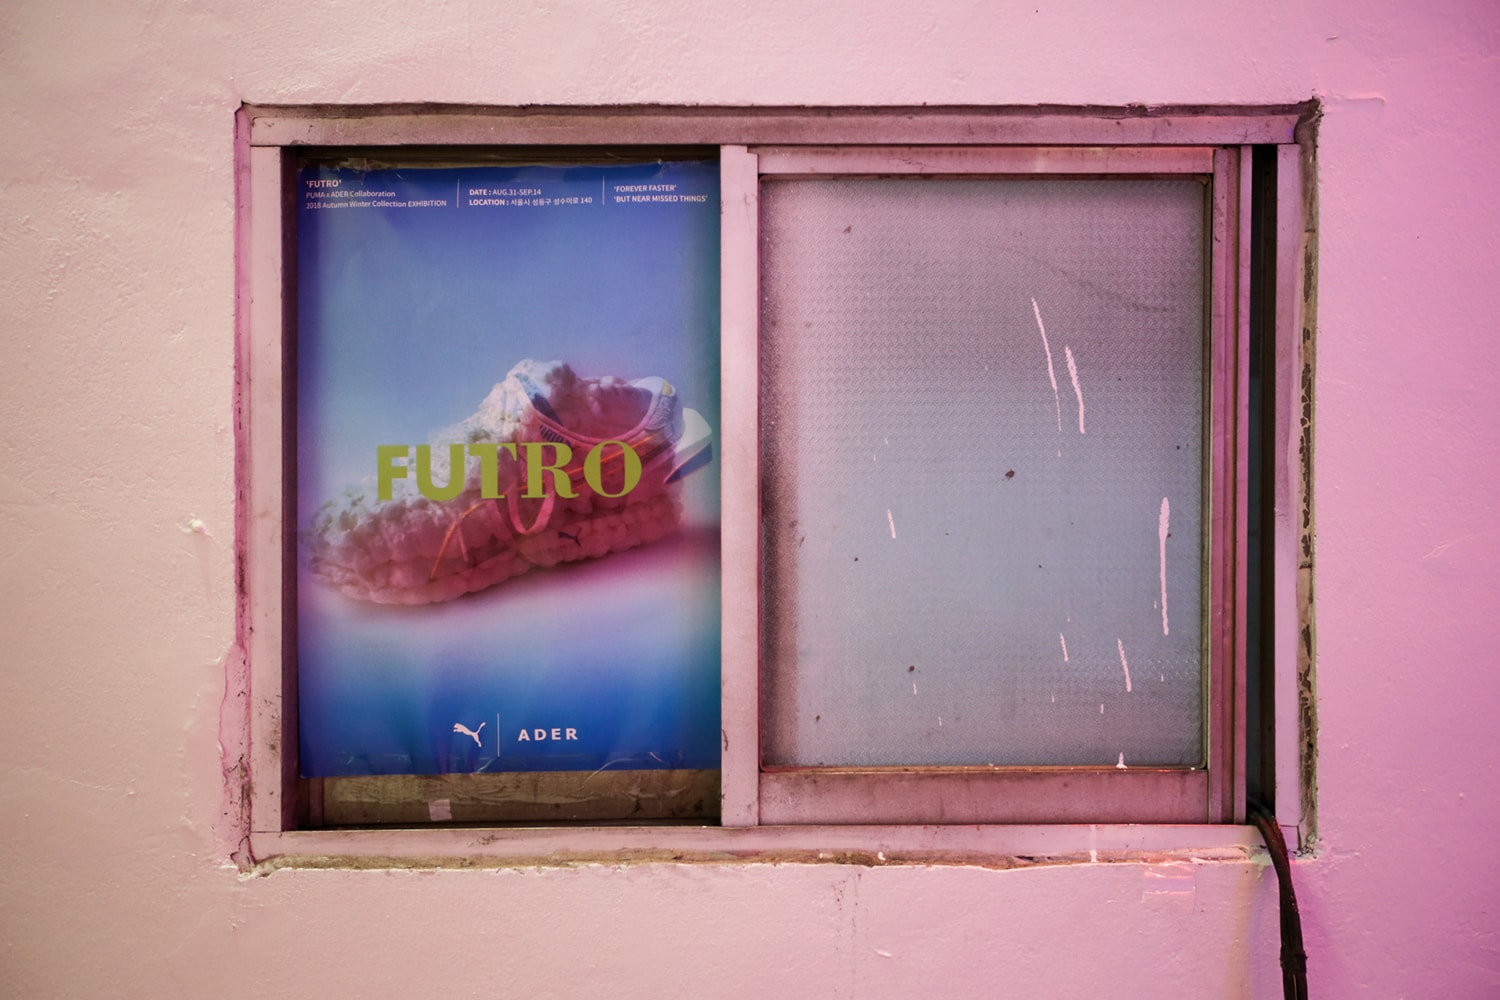 푸마 x 아더에러 FUTRO 컬렉션, 전시 FUTRO WORLD 개최 2018 여름 puma-adererror-futro-collection-recap